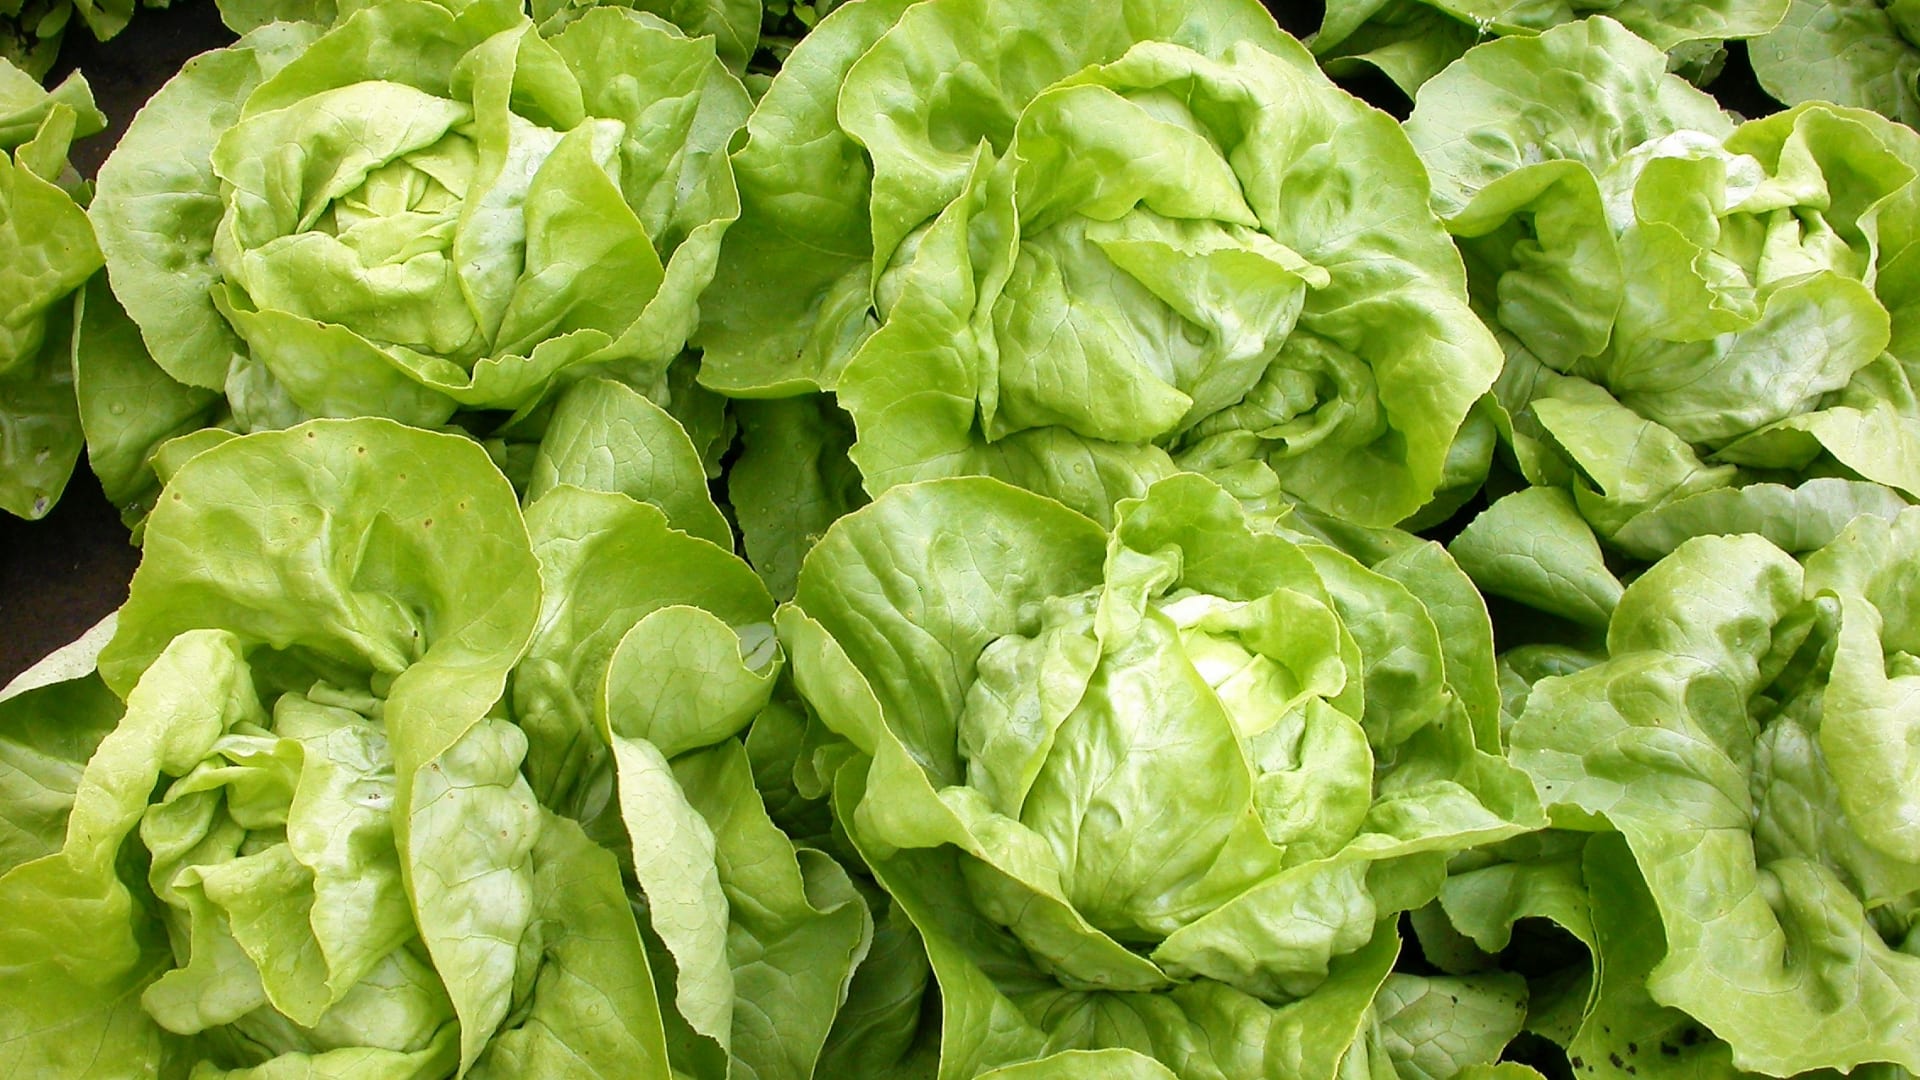 Hlávkový salát: Poloraná odrůda Merkurion s velkou hlávkou (350 – 380 gramů) má listy tuhé, hráškově zelené. Pyšní se perfektním zdravotním stavem. je resistentní k většině ras plísně salátové i virové mozaice salátu. 